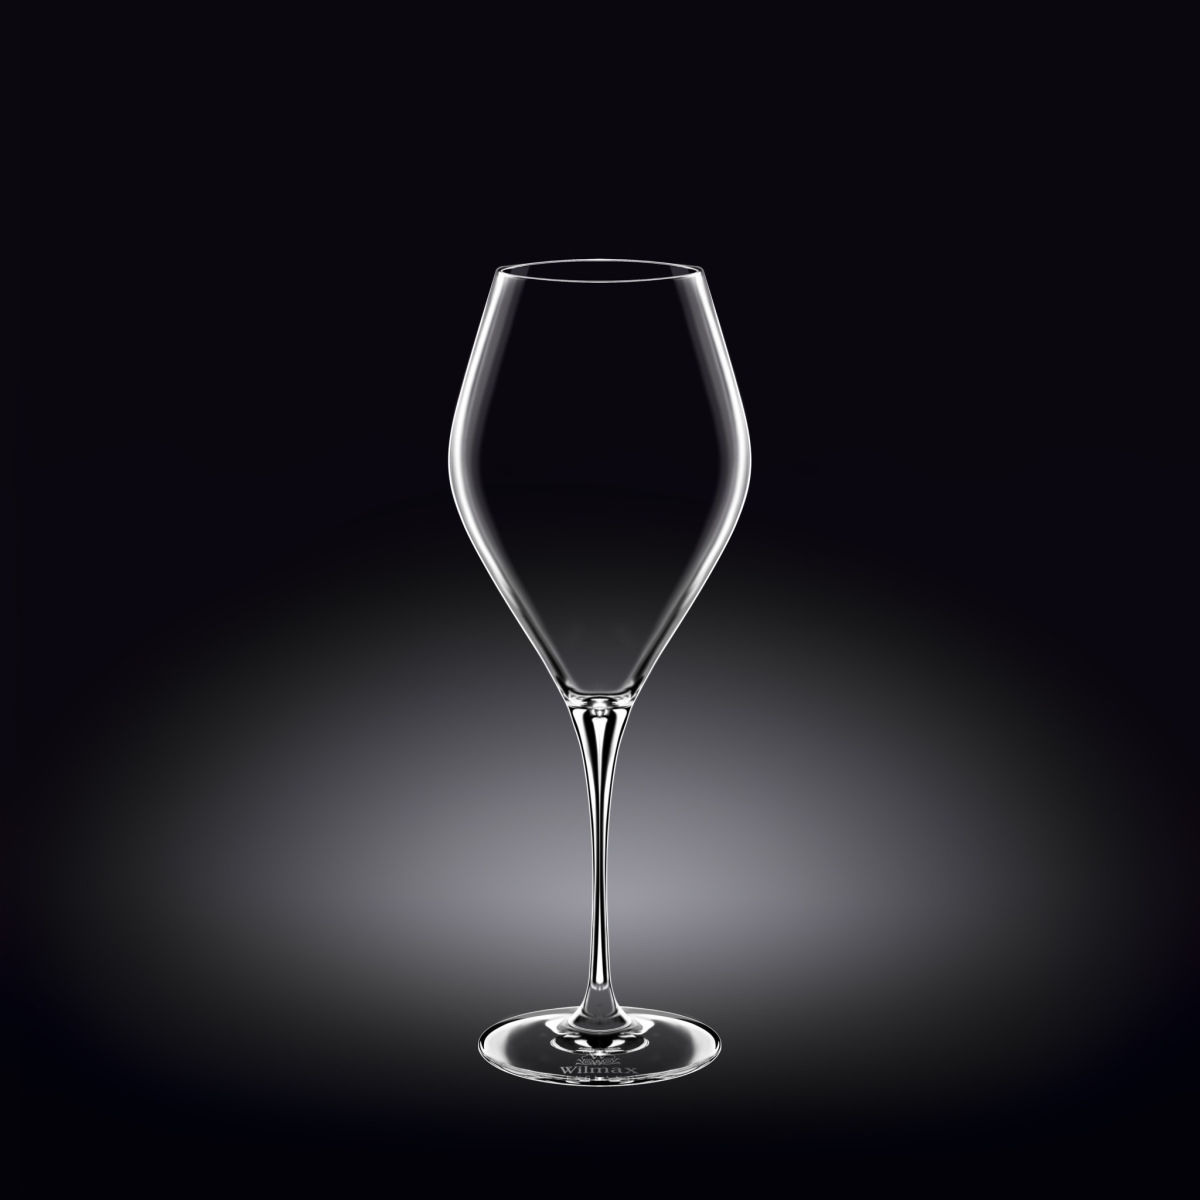 Wl-888045-2c Wine Glass 14 Oz. 420 Ml. Set Of 2 In Colour Box